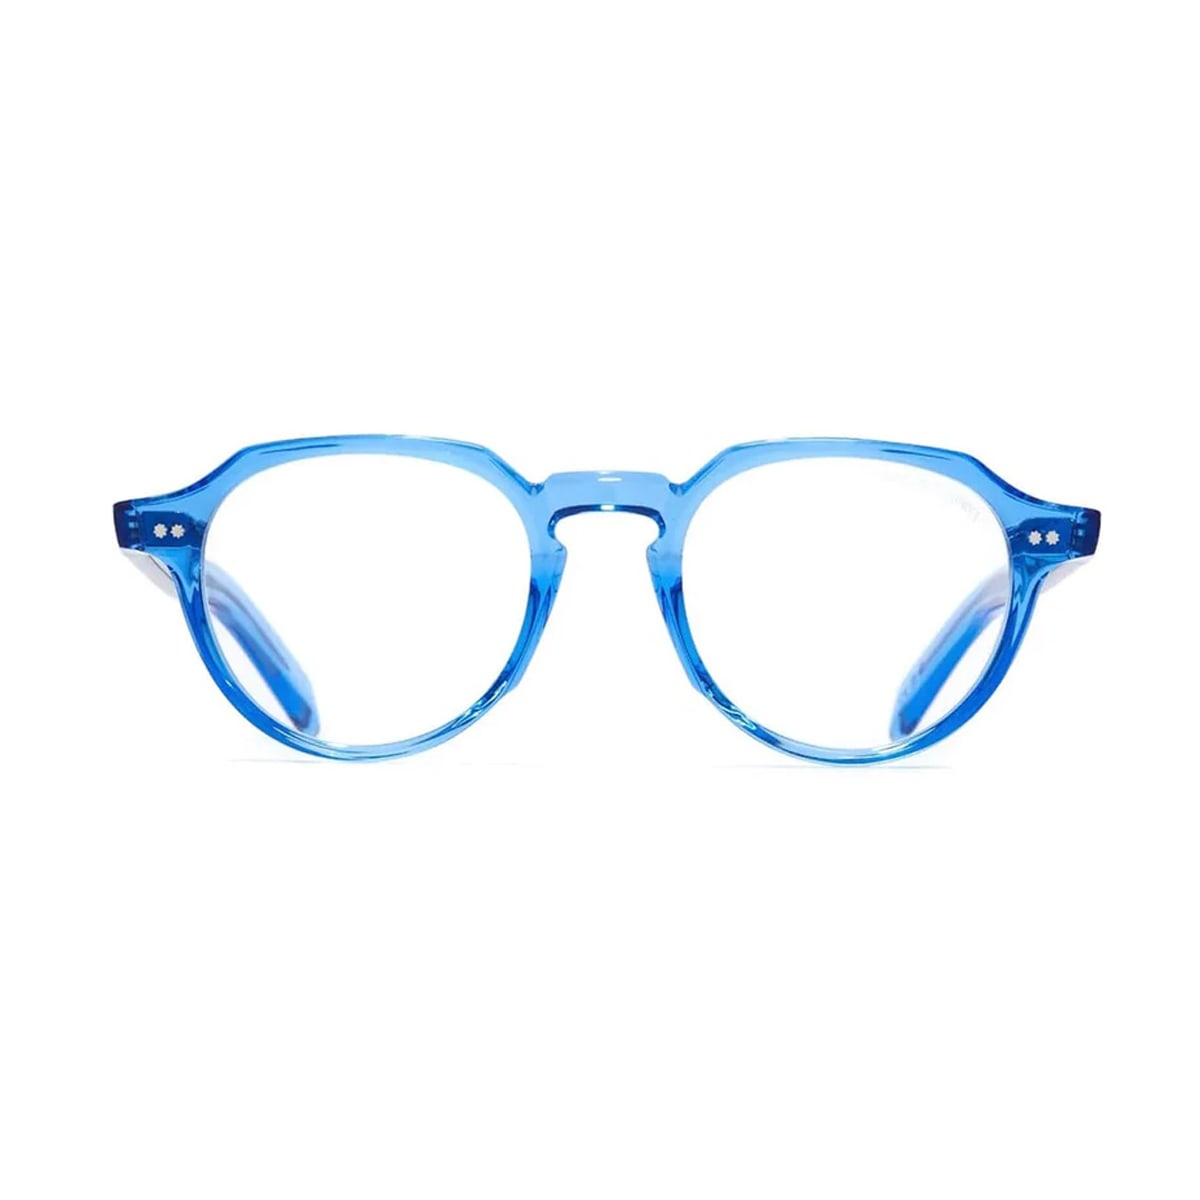 Gr06 A7 Blue Crystal Glasses